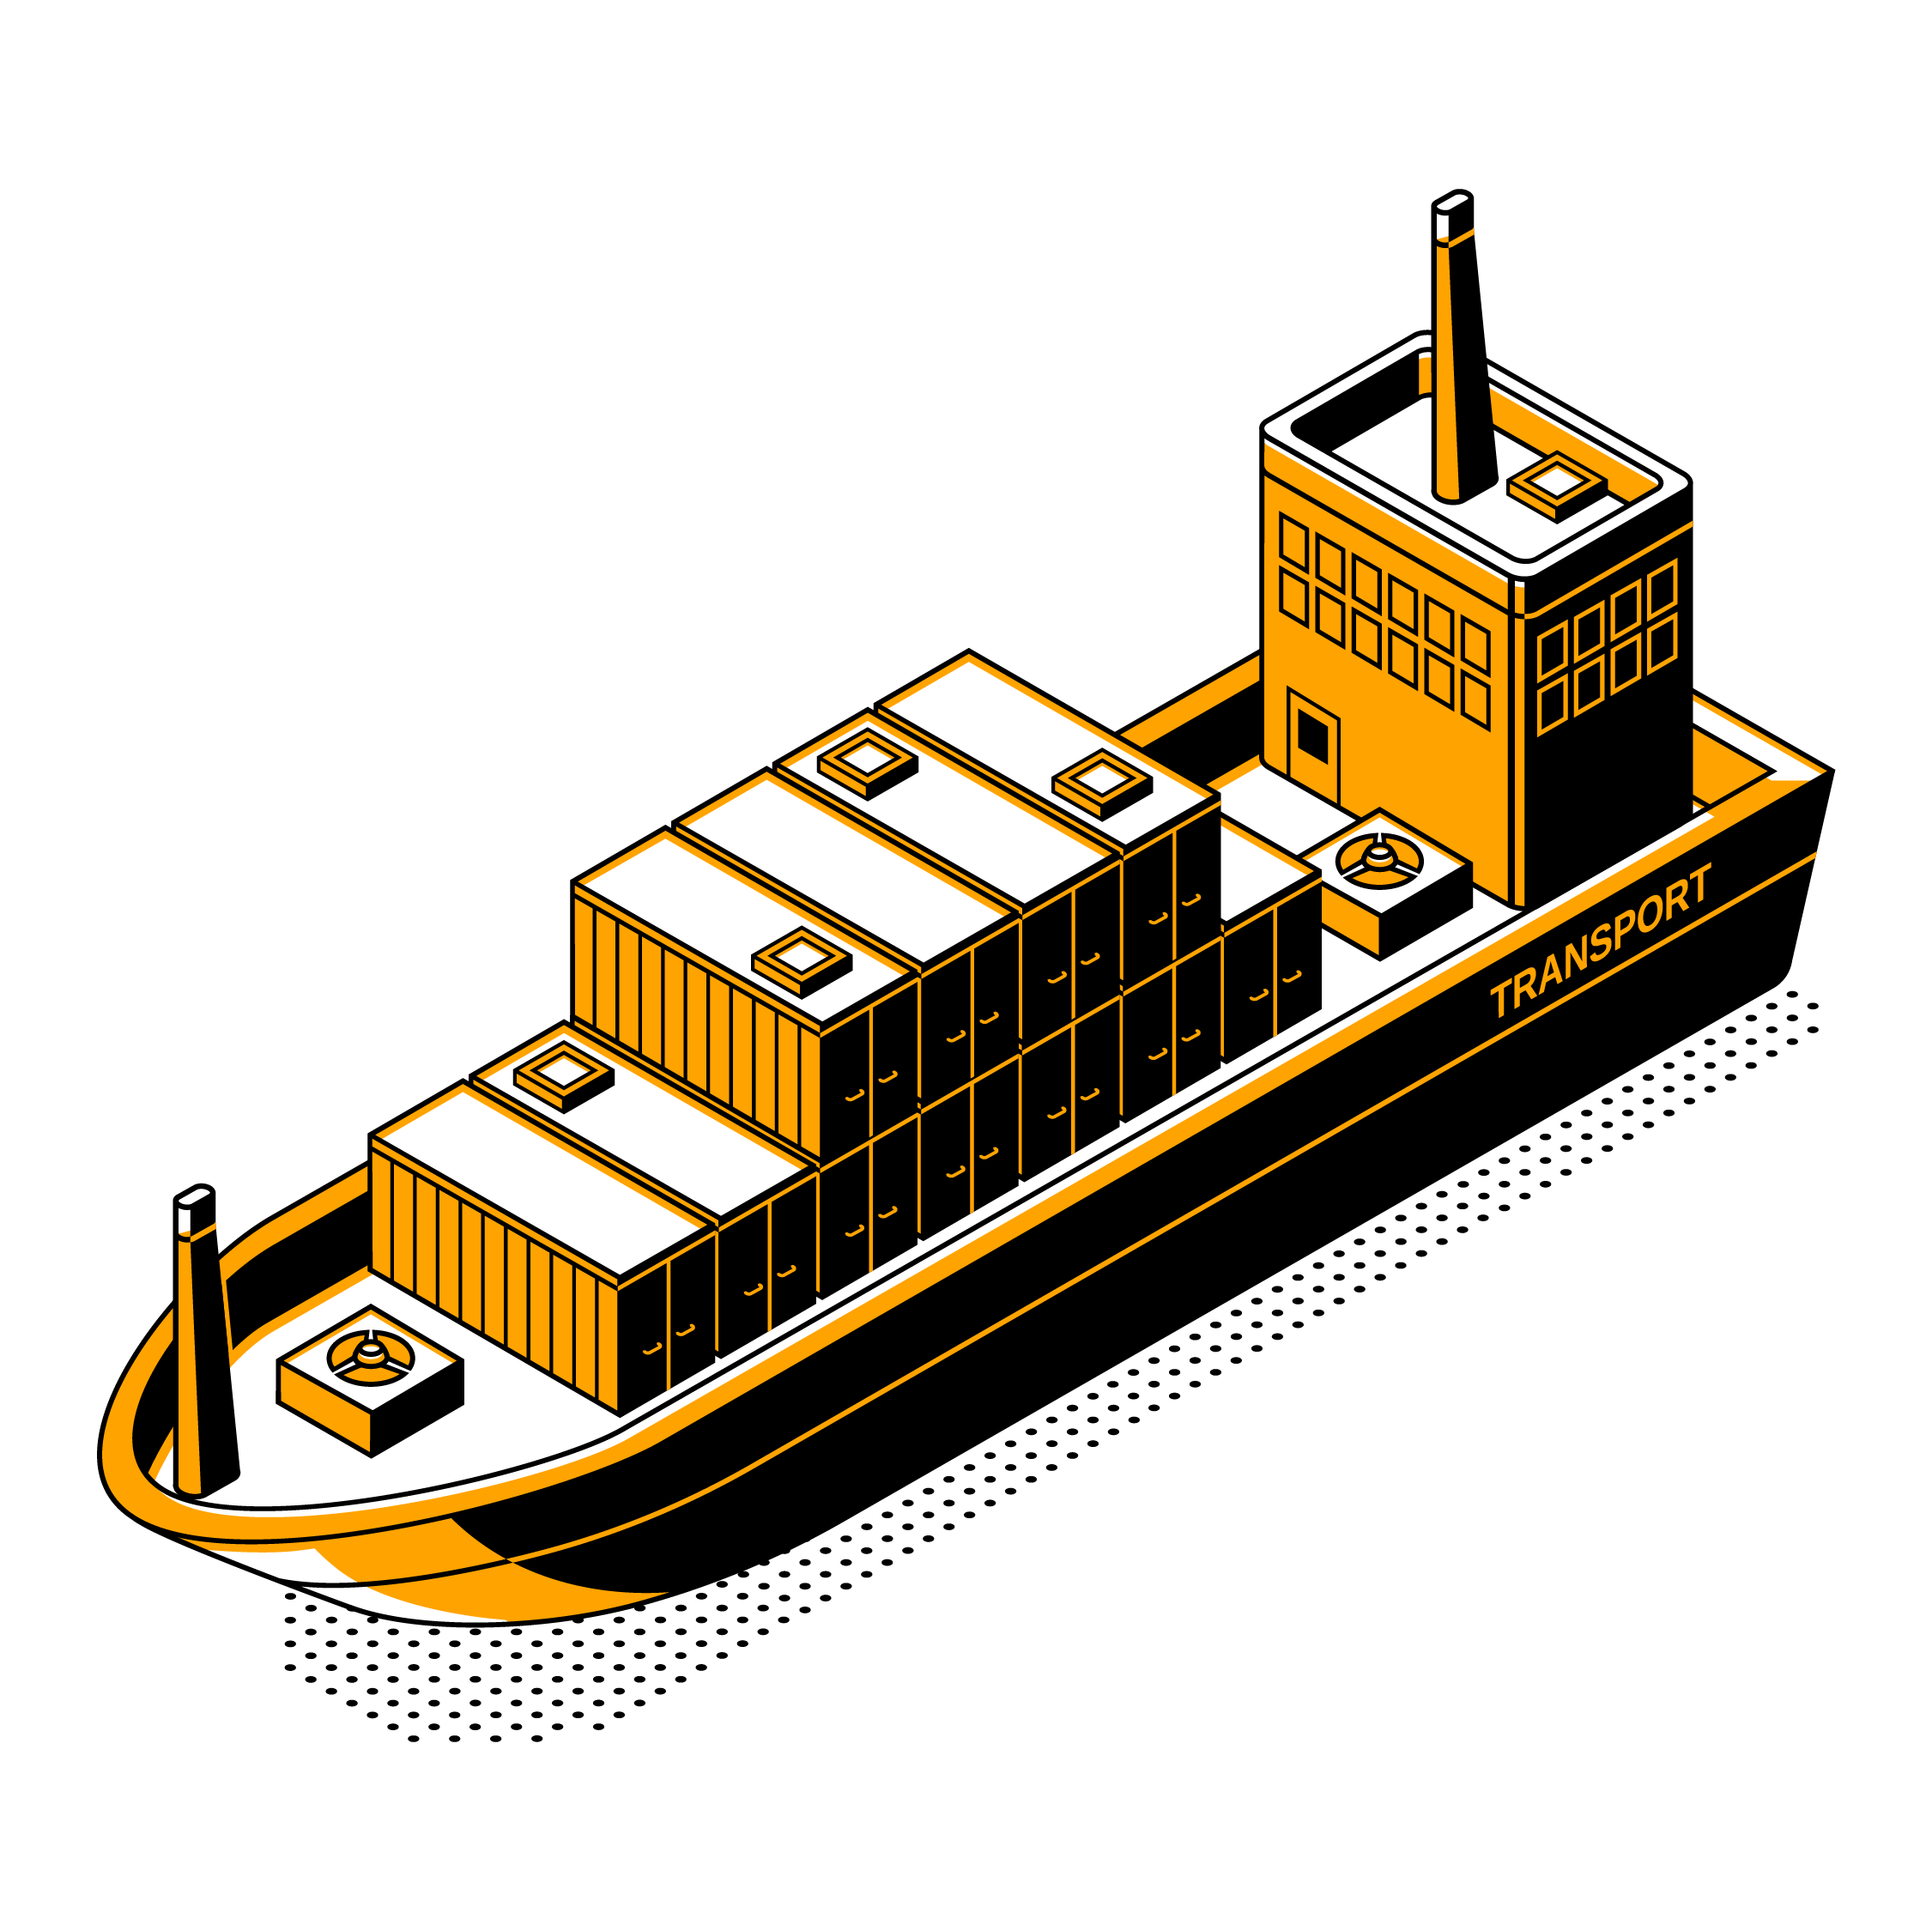 zeevracht tarieven zeetransport transport expediteur kosten berekenen calculator 